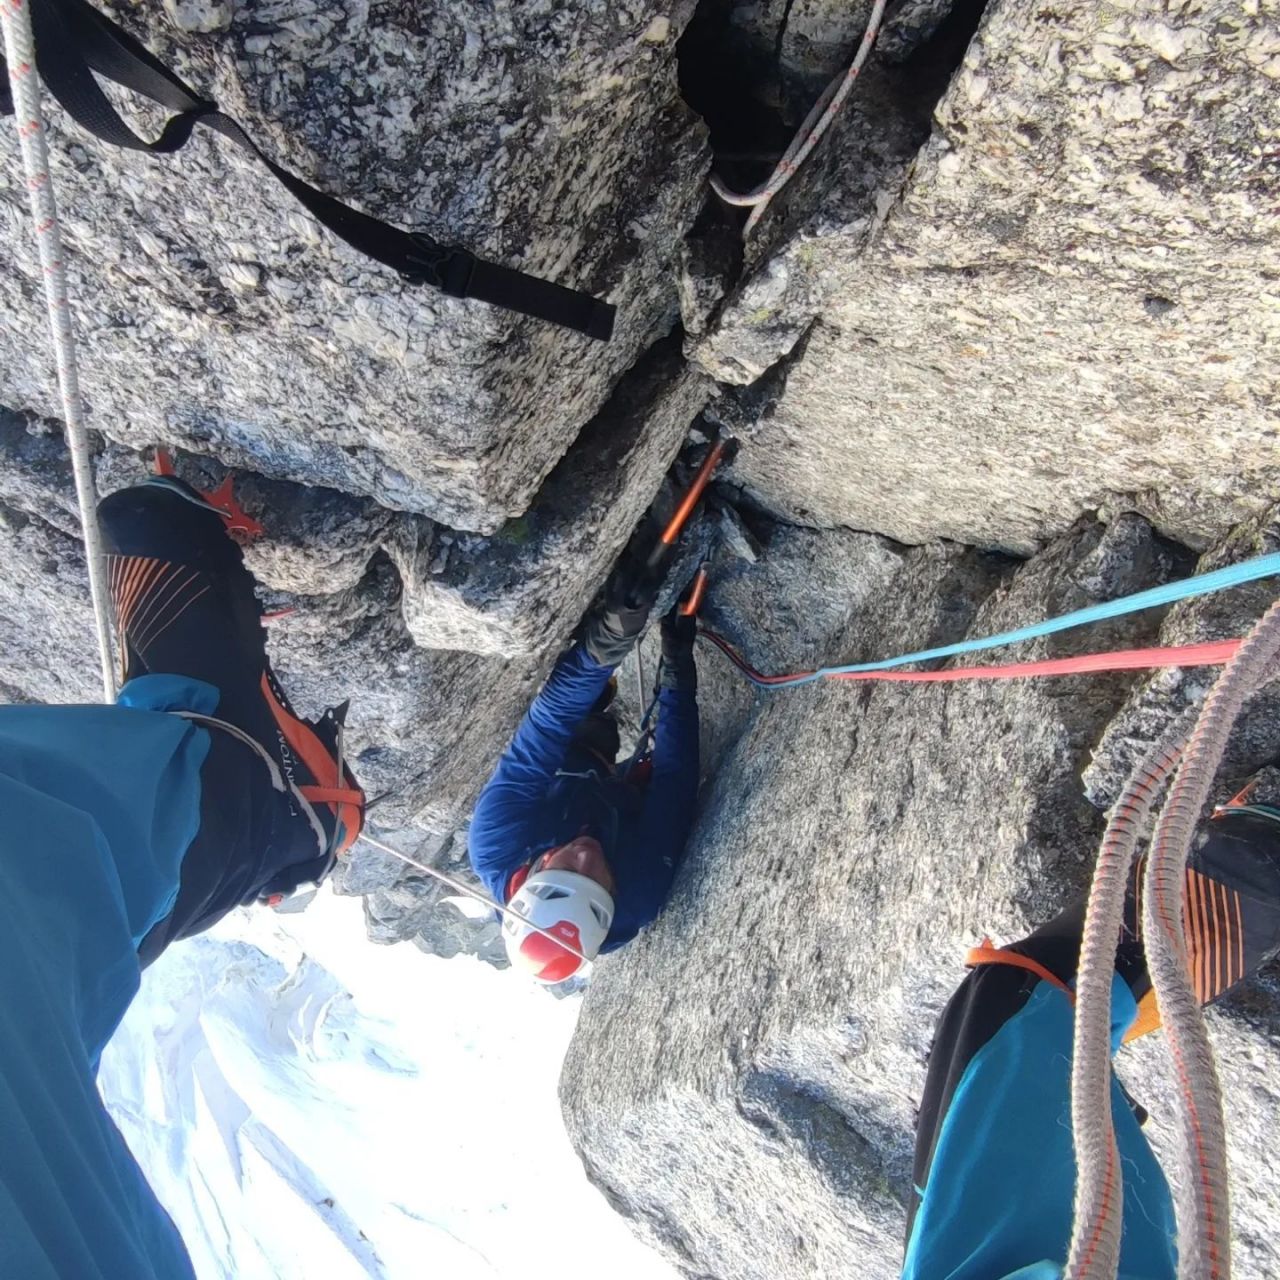 Том Ливингстон (Tom Livingston) и Кристоф Думаре (Christophe Dumarest) проложили новый маршрут "Changing corners"(250м, M7) по северной стене пика Пуант Адольф Ре (Pointe Adolphe Rey) высотой 3535 метров в массиве Монблан 